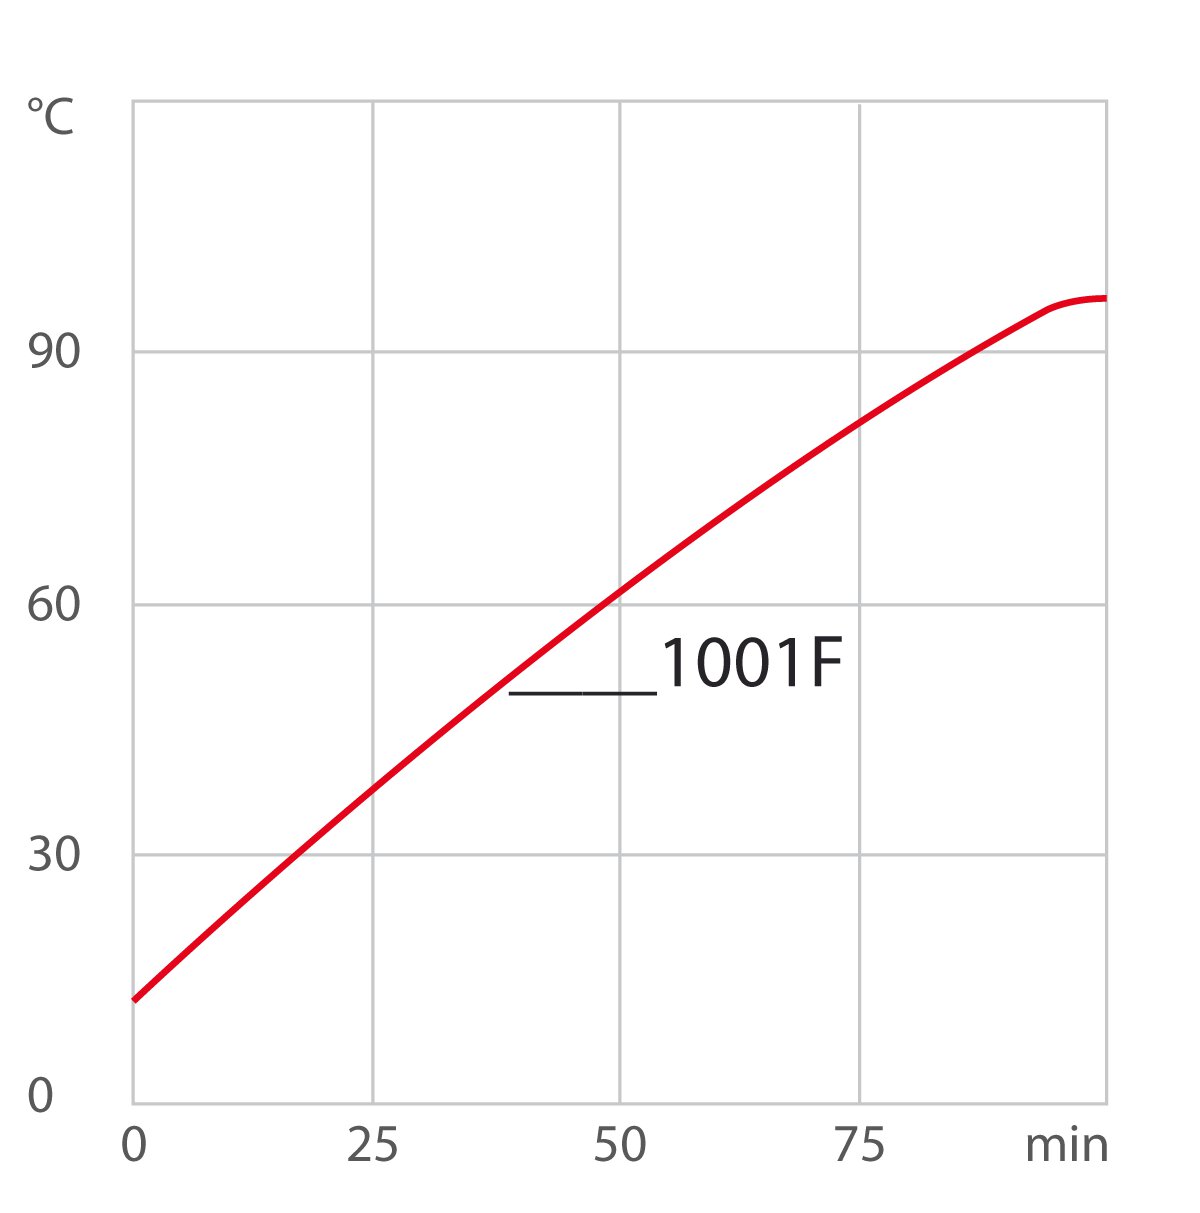 Curva de calefacción para el criotstato de circulación 1001F